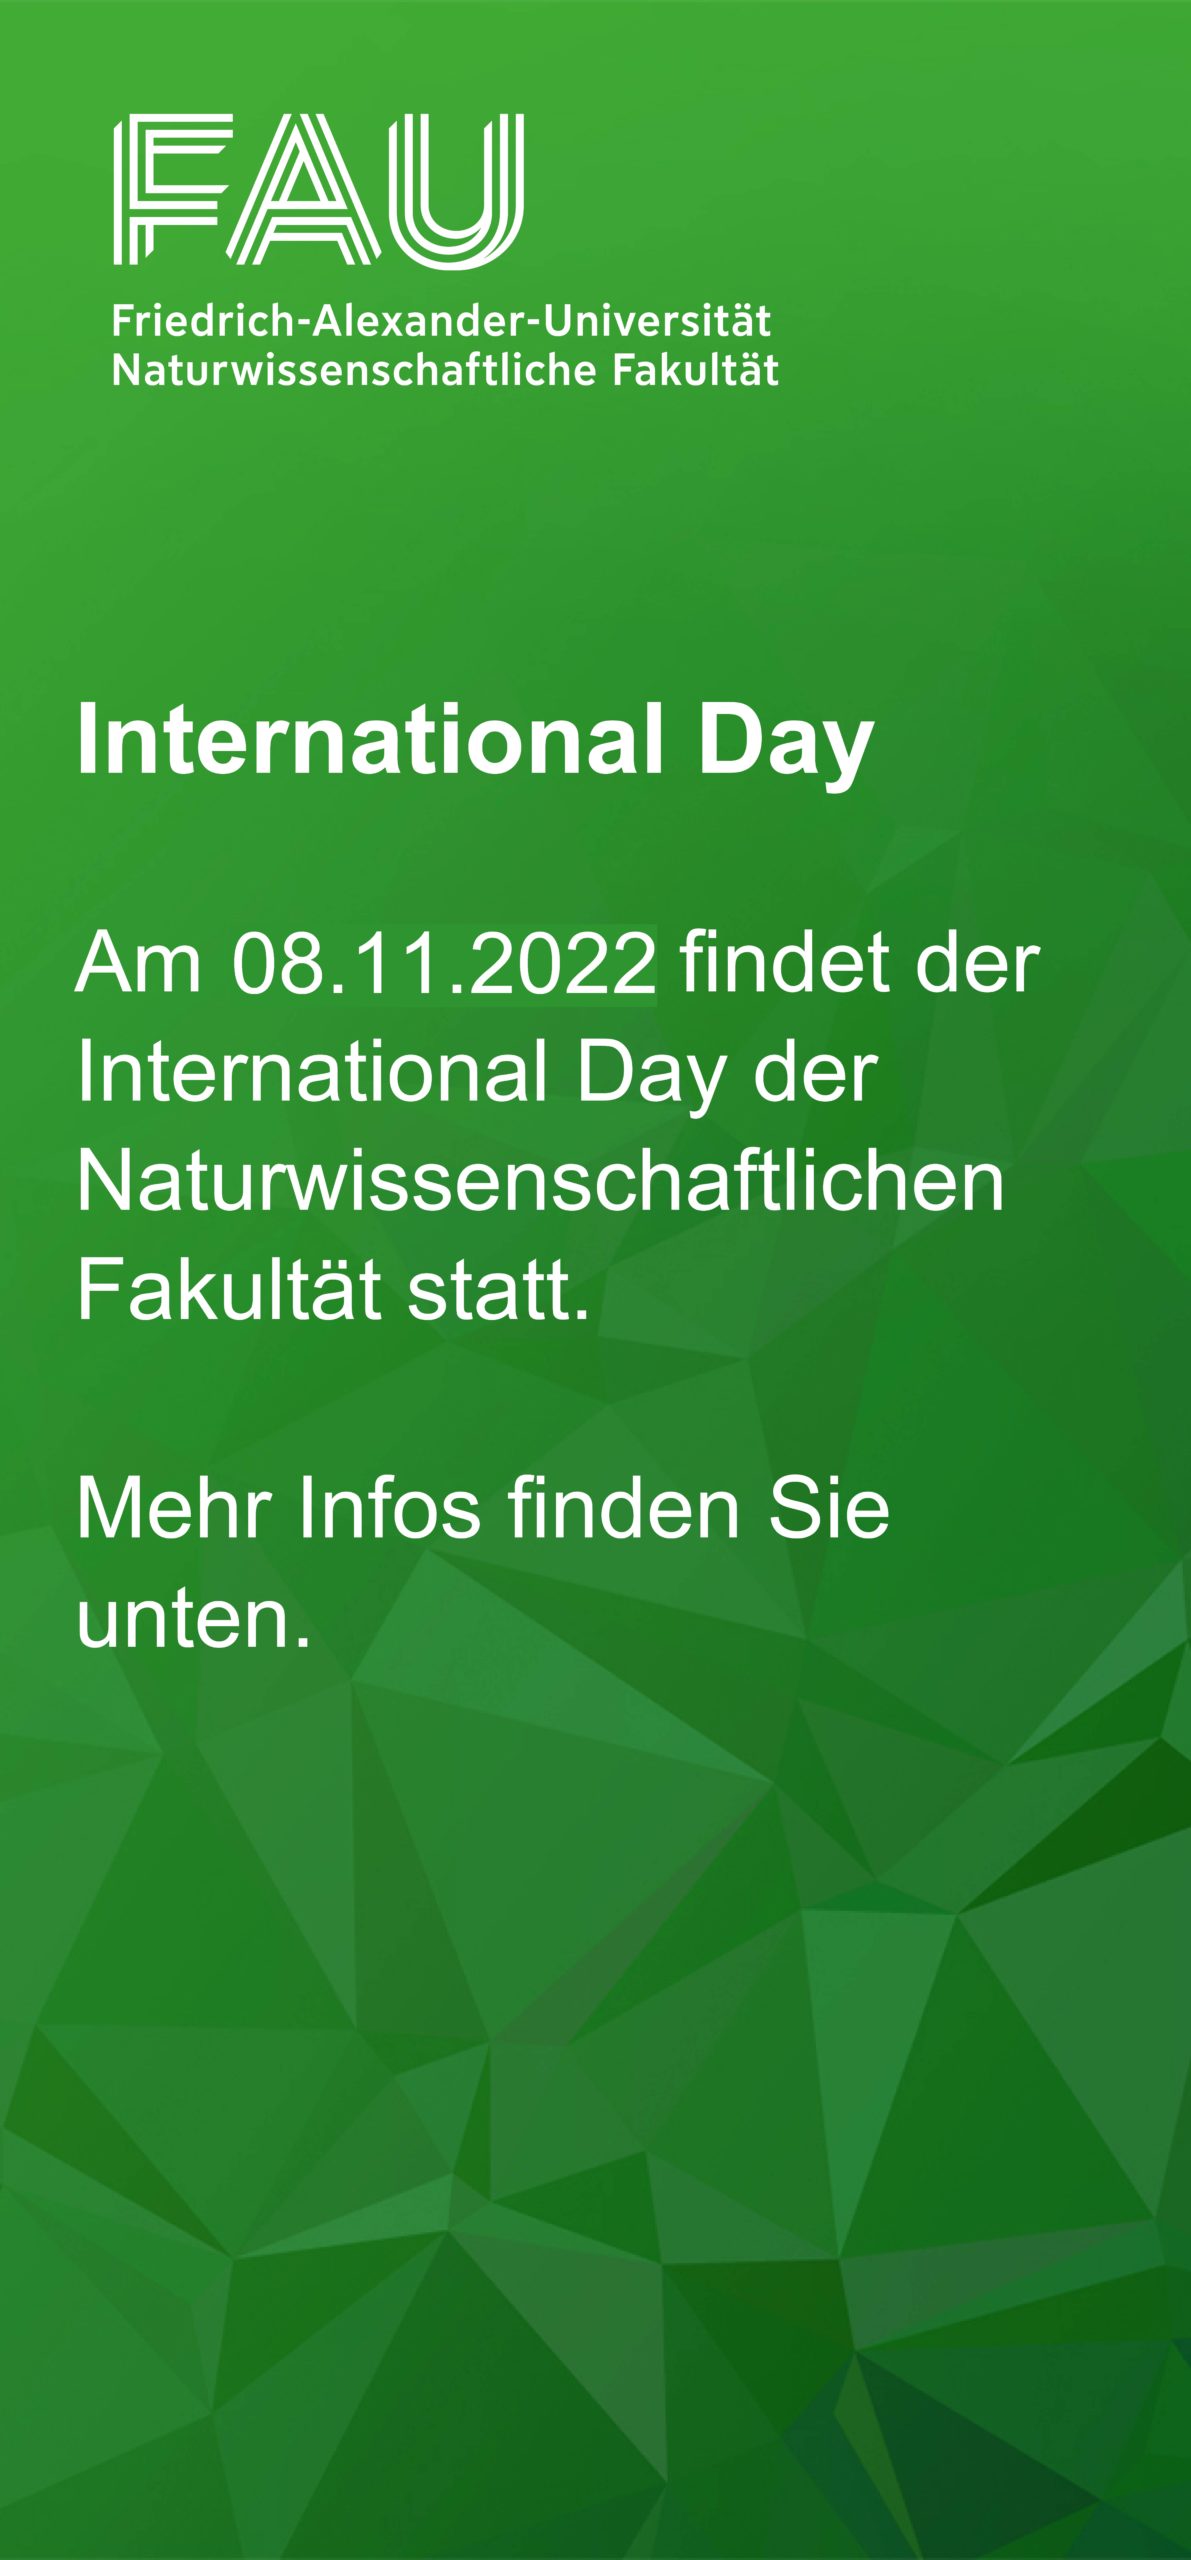 Auf einem grünen Banner steht: International Day, Am 8.11.2022 findet der International Day der Naturwissenschaftlichen Fakultät statt. Mehr Infos finden Sie unten.